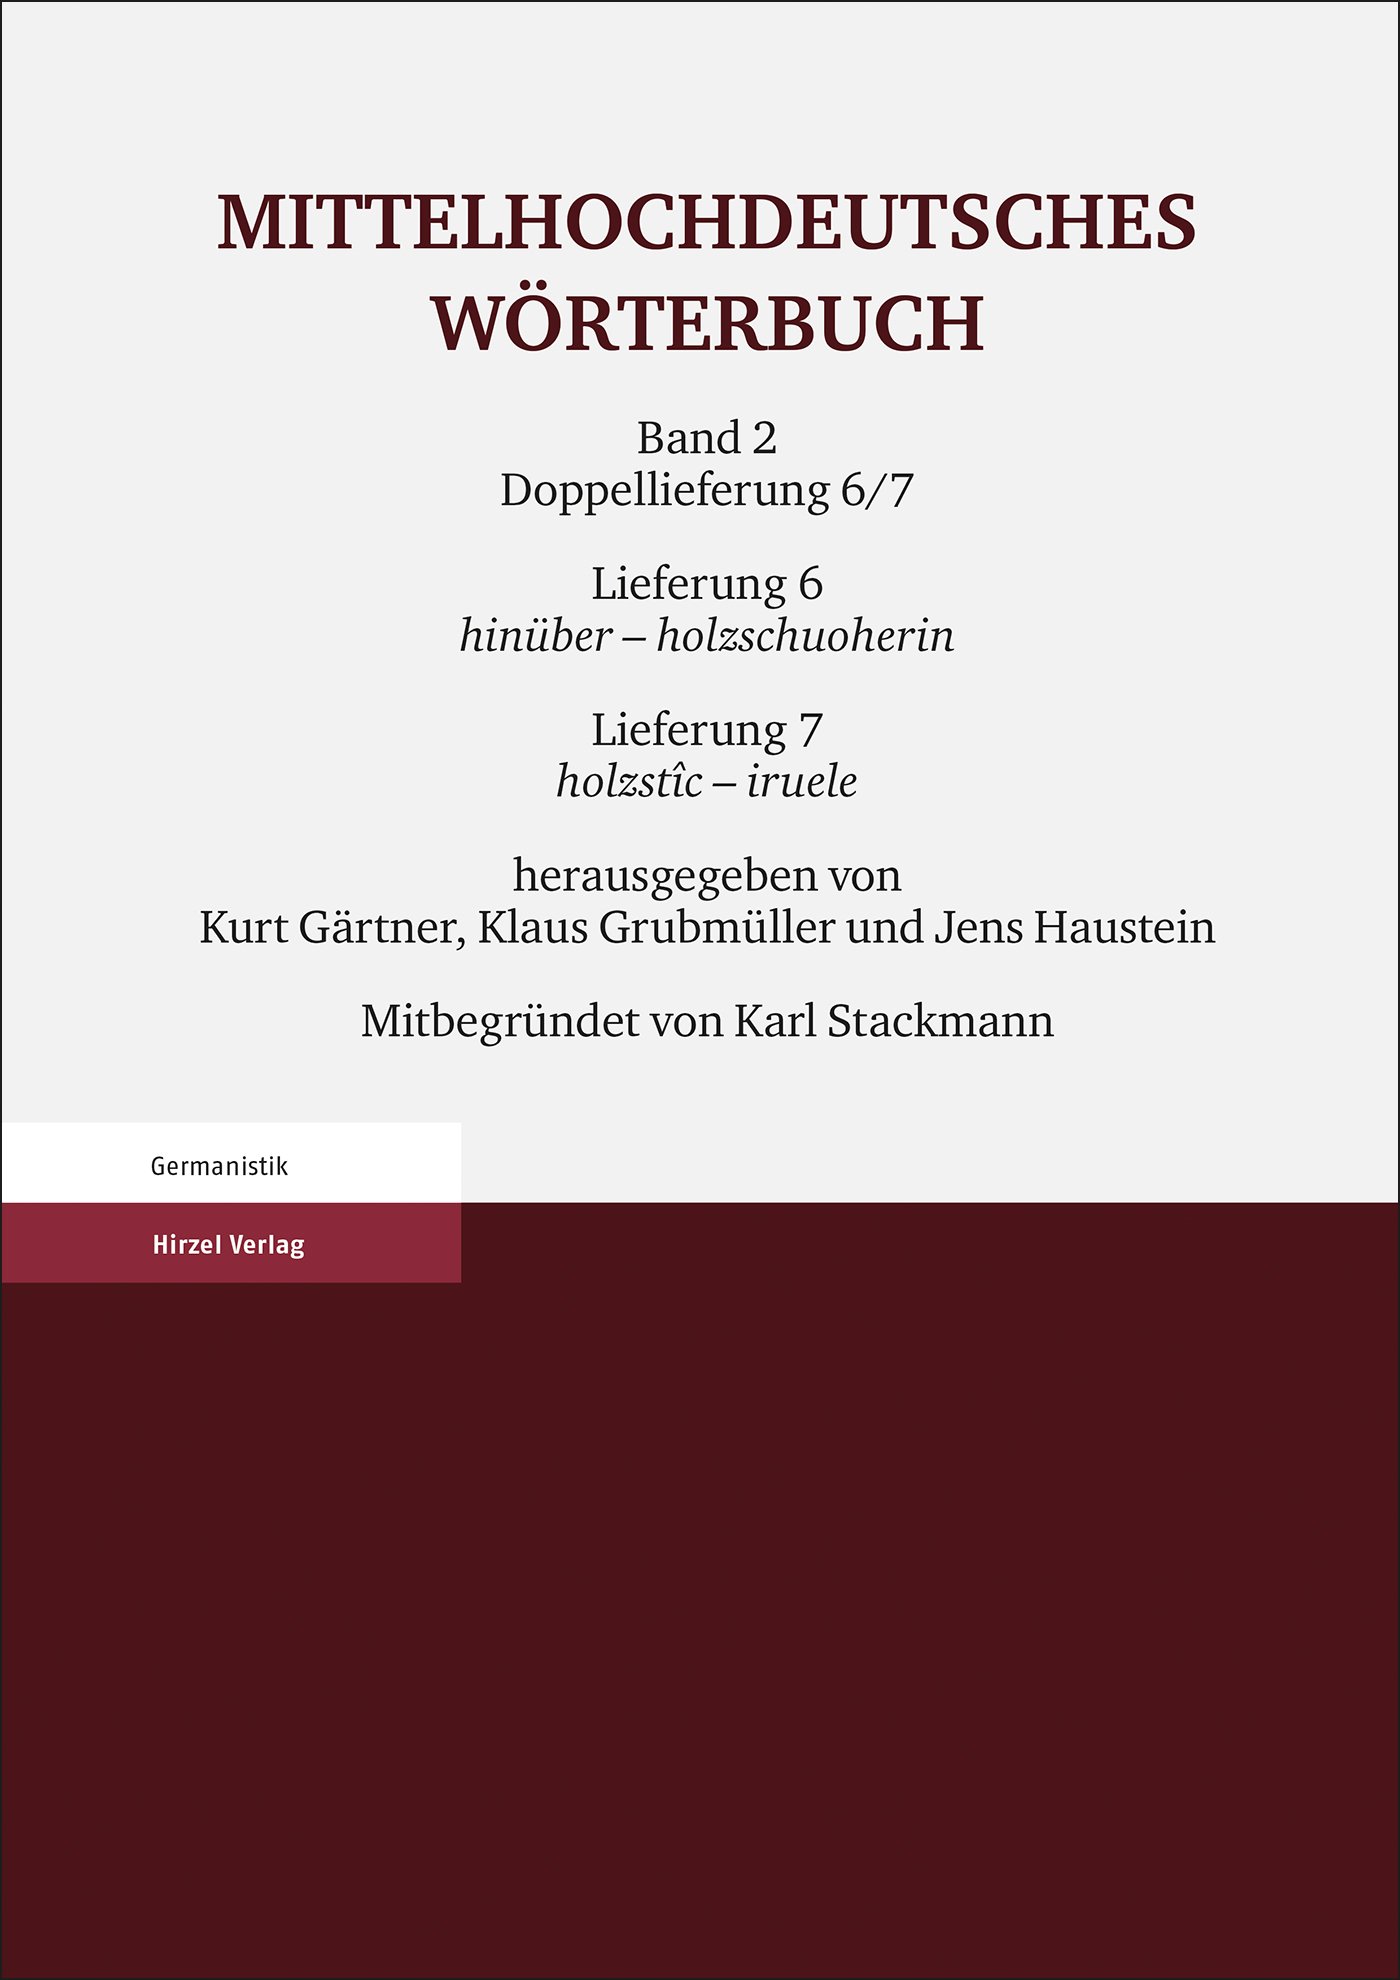 Mittelhochdeutsches Wörterbuch. Zweiter Band, Lieferung 6: hinüber - holzschuoherin, Lieferung 7: holzstîc - iruele